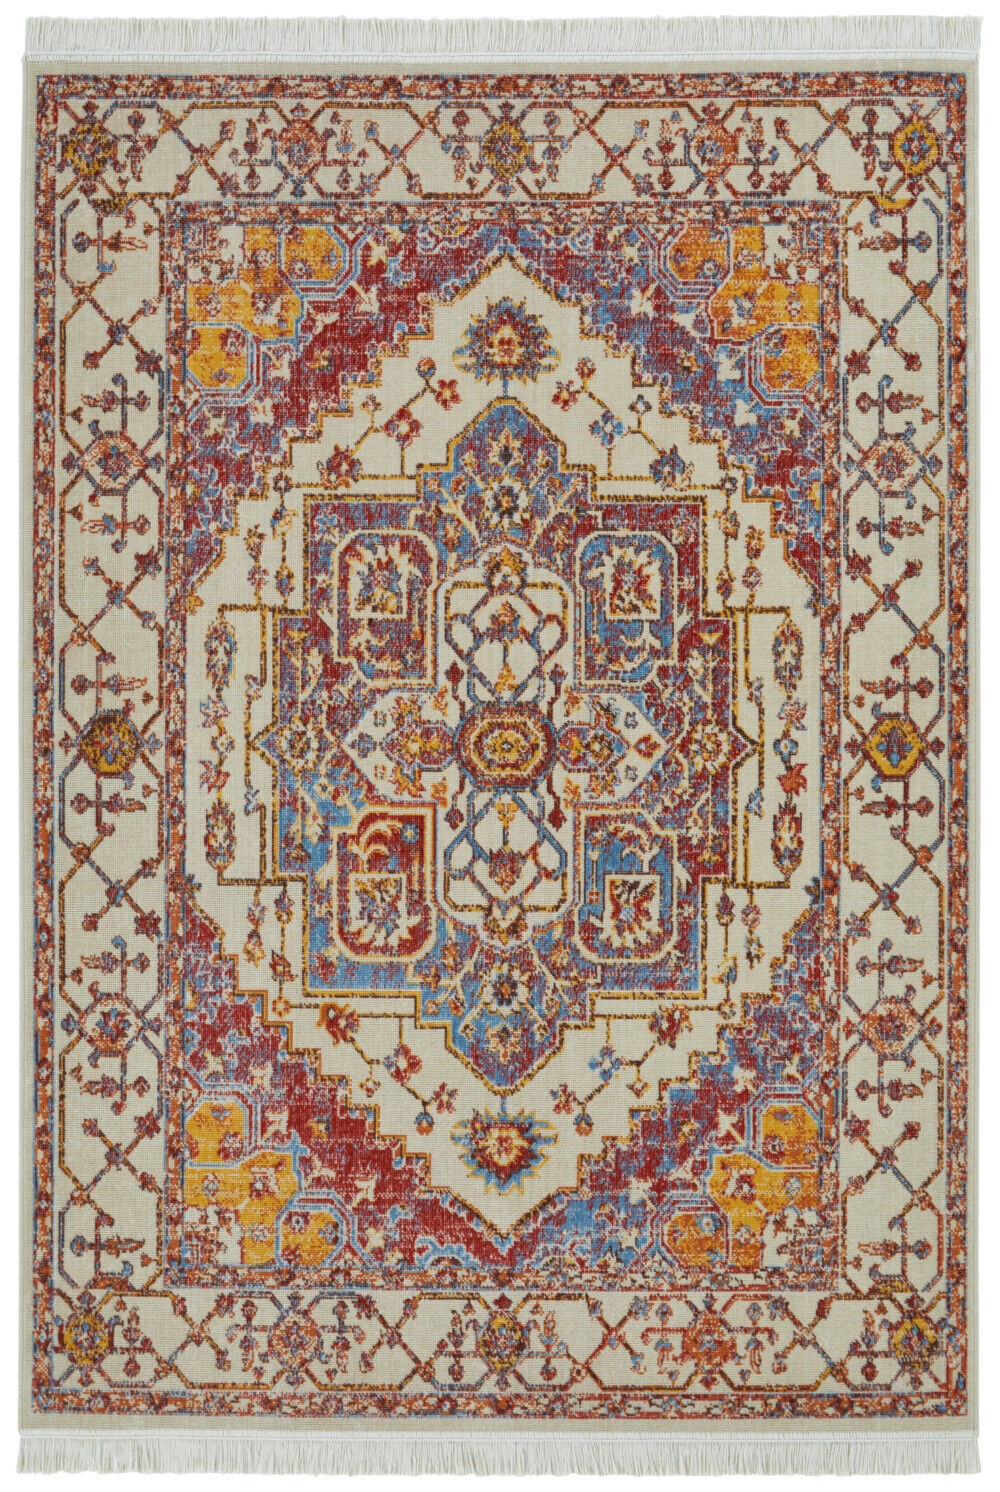 Nouristan - Hanse Home koberce Kusový koberec Sarobi 105130 Cream, Multicolored - 200x290 cm